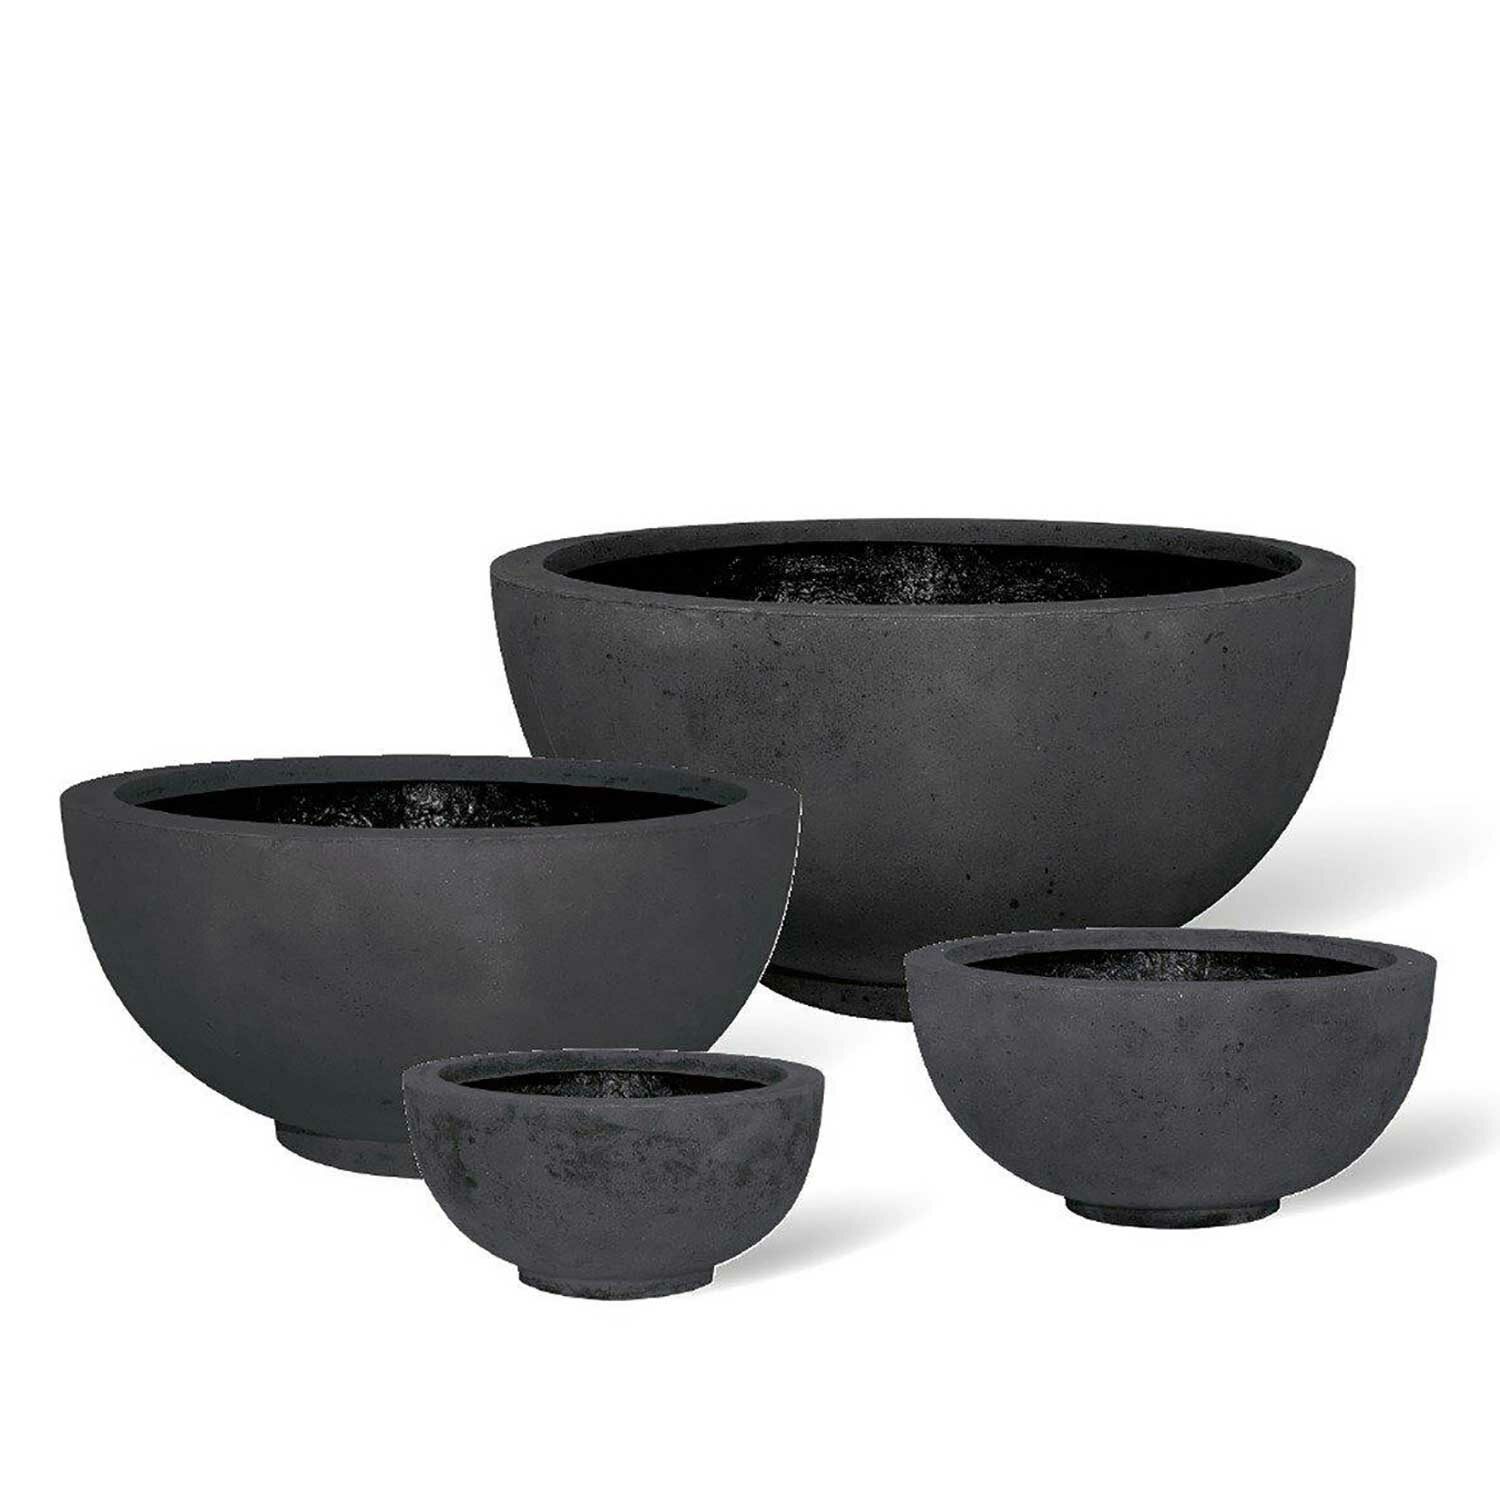 PLUS planter bowl anthracite